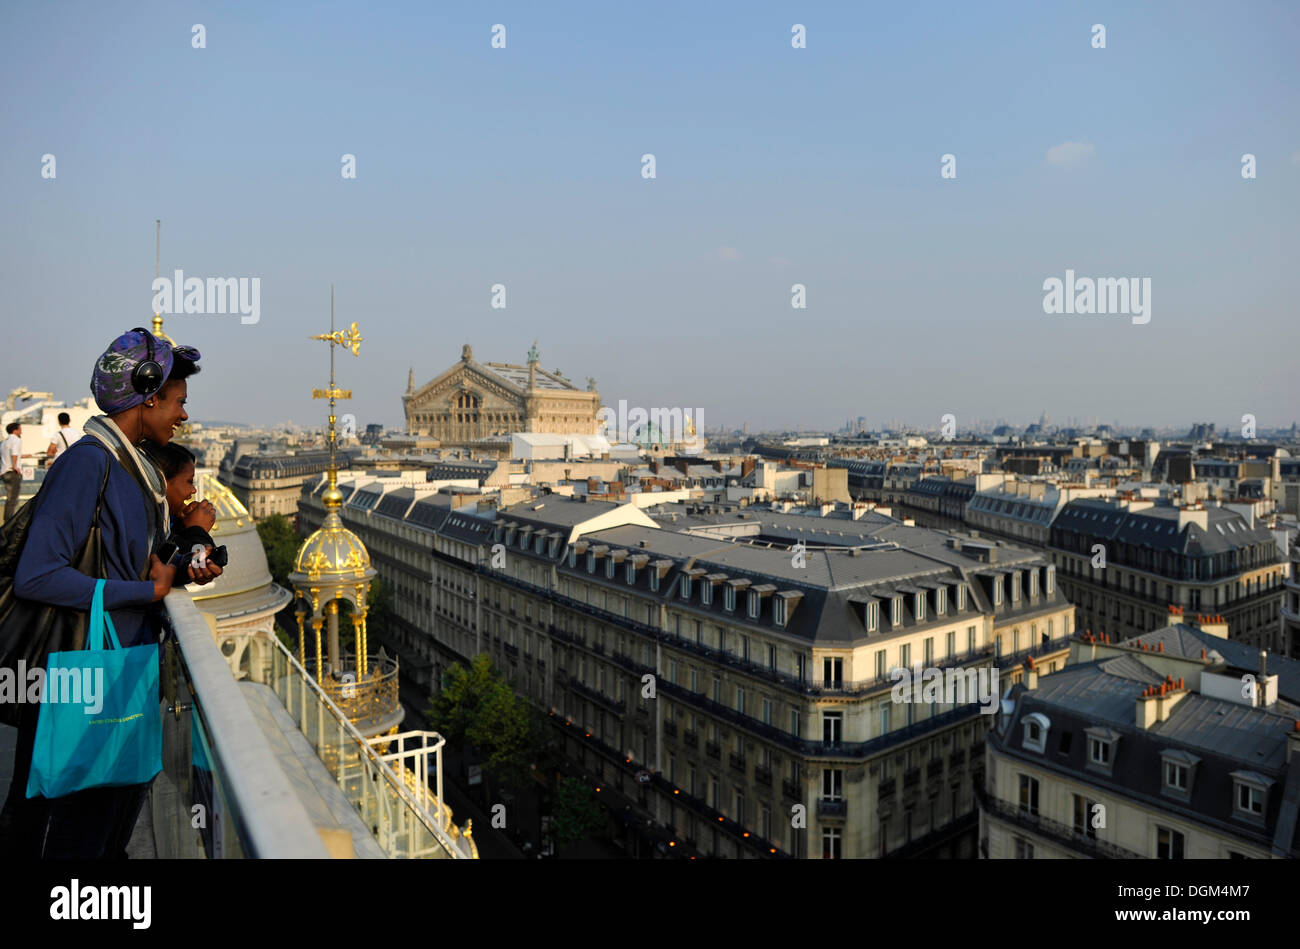 Les touristes et vue depuis une plate-forme d'observation sur l'Opéra Palais Garnier, Opéra, Paris, France, Europe Banque D'Images